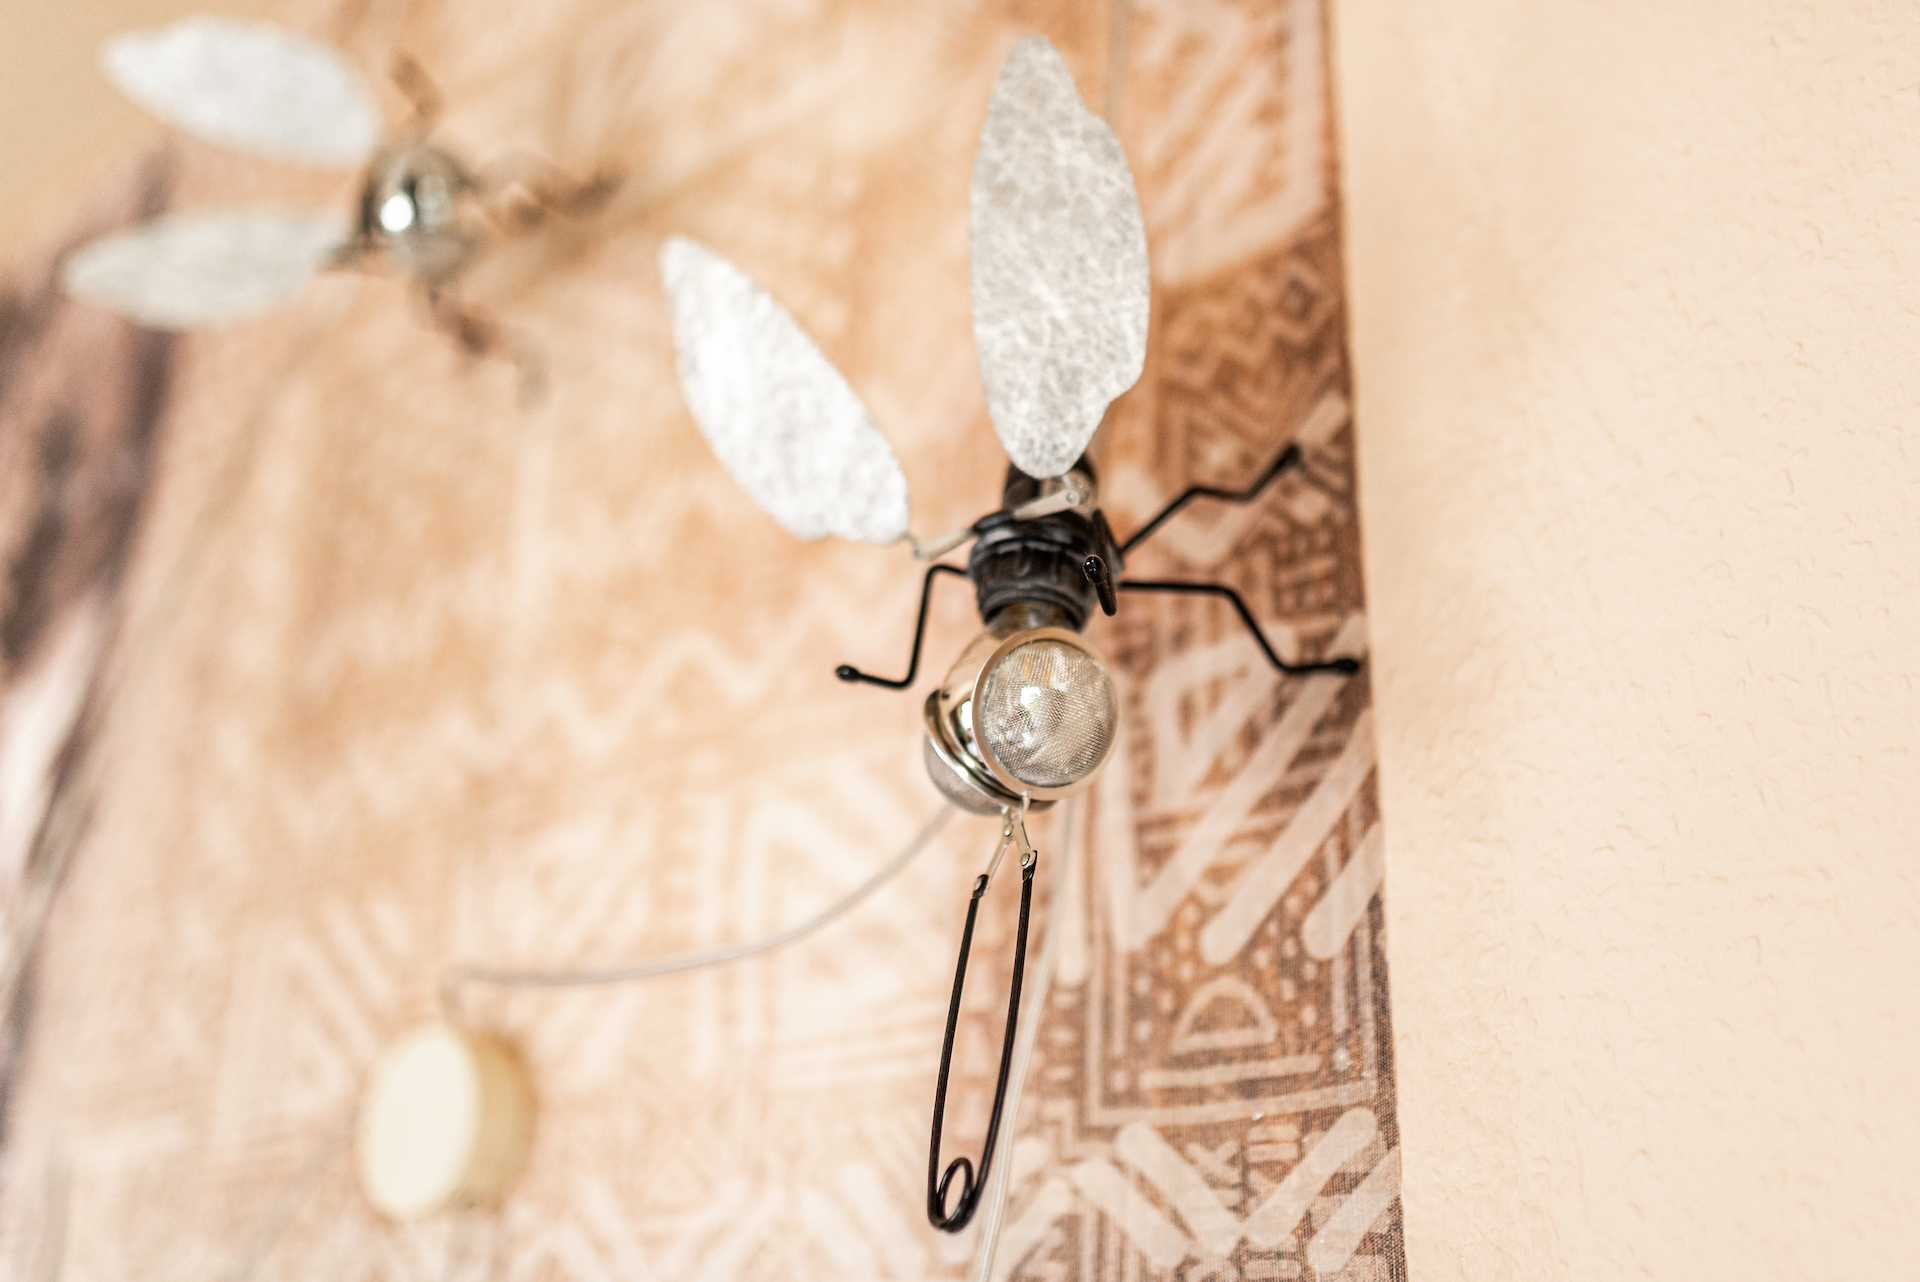 Lampe ausgeschmückt als Fliege, wobei die Augen aus einem Teesieb bestehen